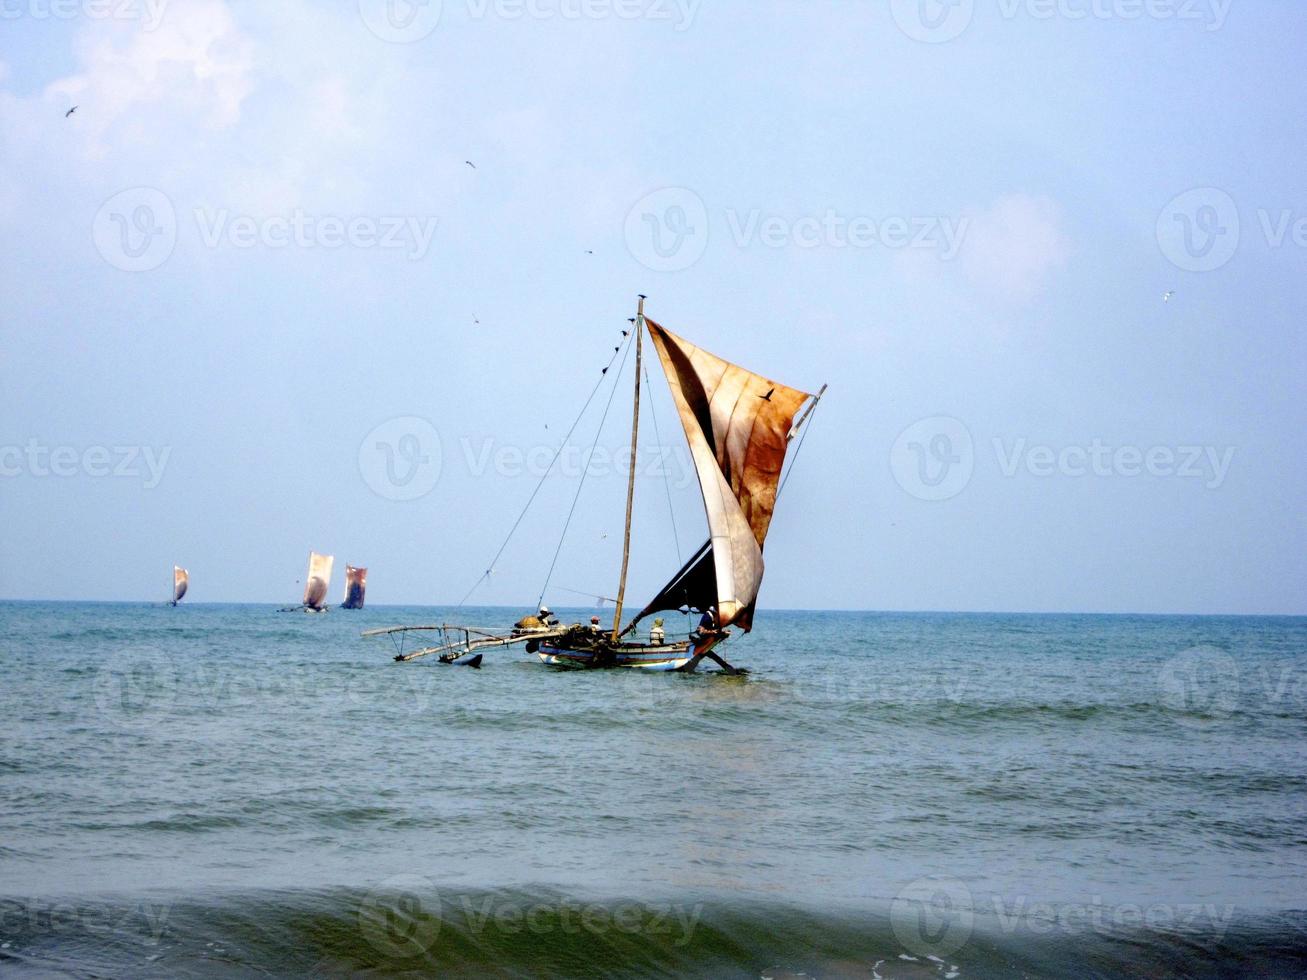 beau bateau en bois avec des voiles en cuir sur le mât flottant au vent photo